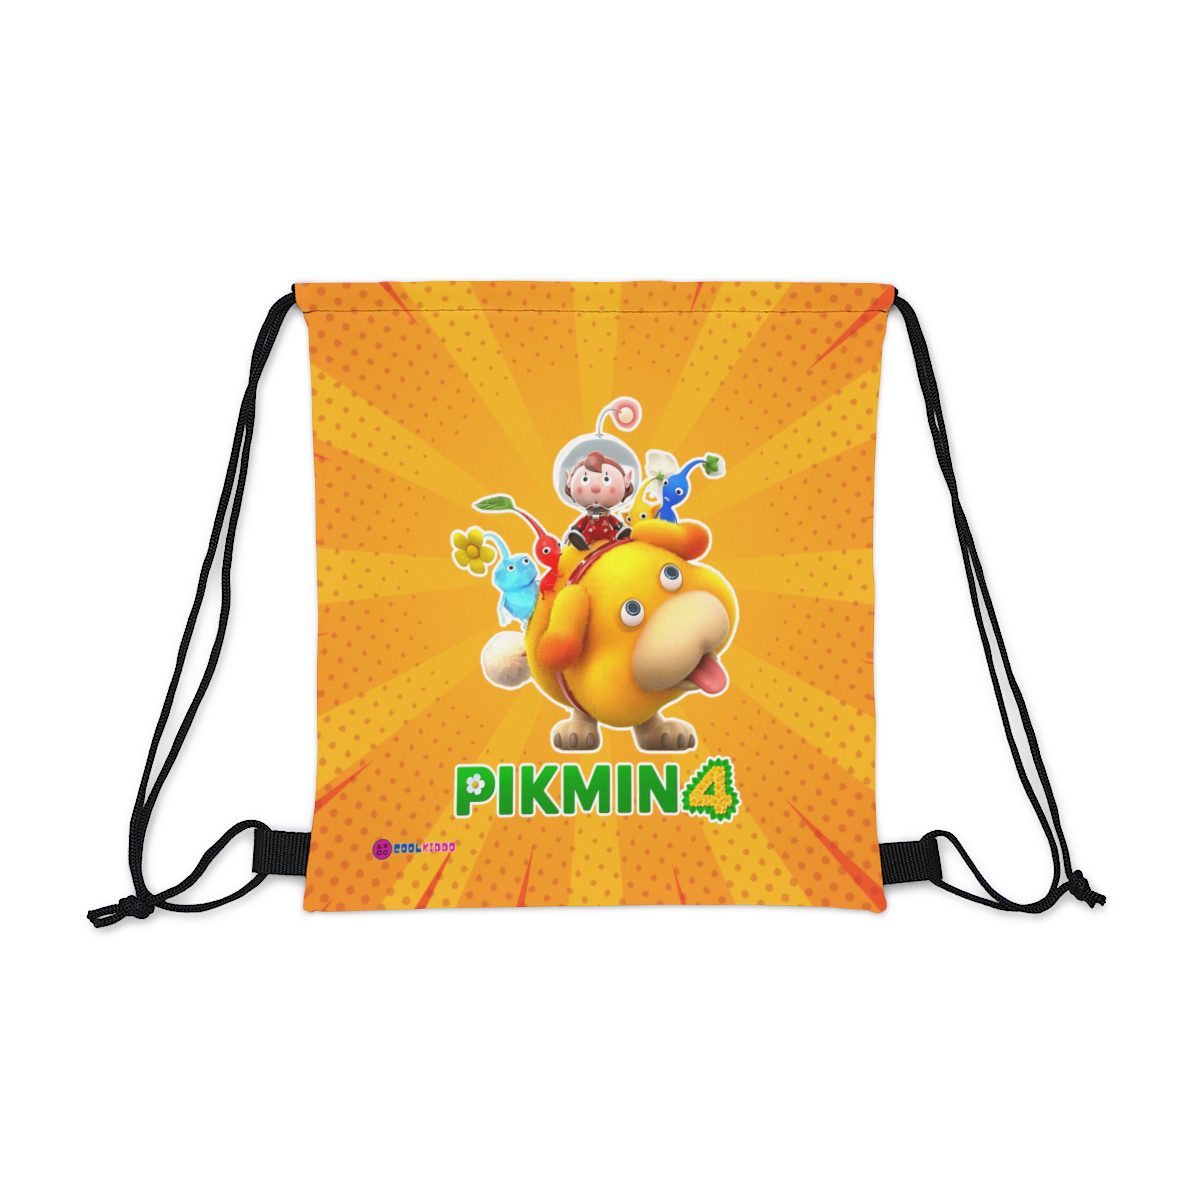 PIKMIN 4 Video Game Yellow Drawstring Bag Cool Kiddo 10